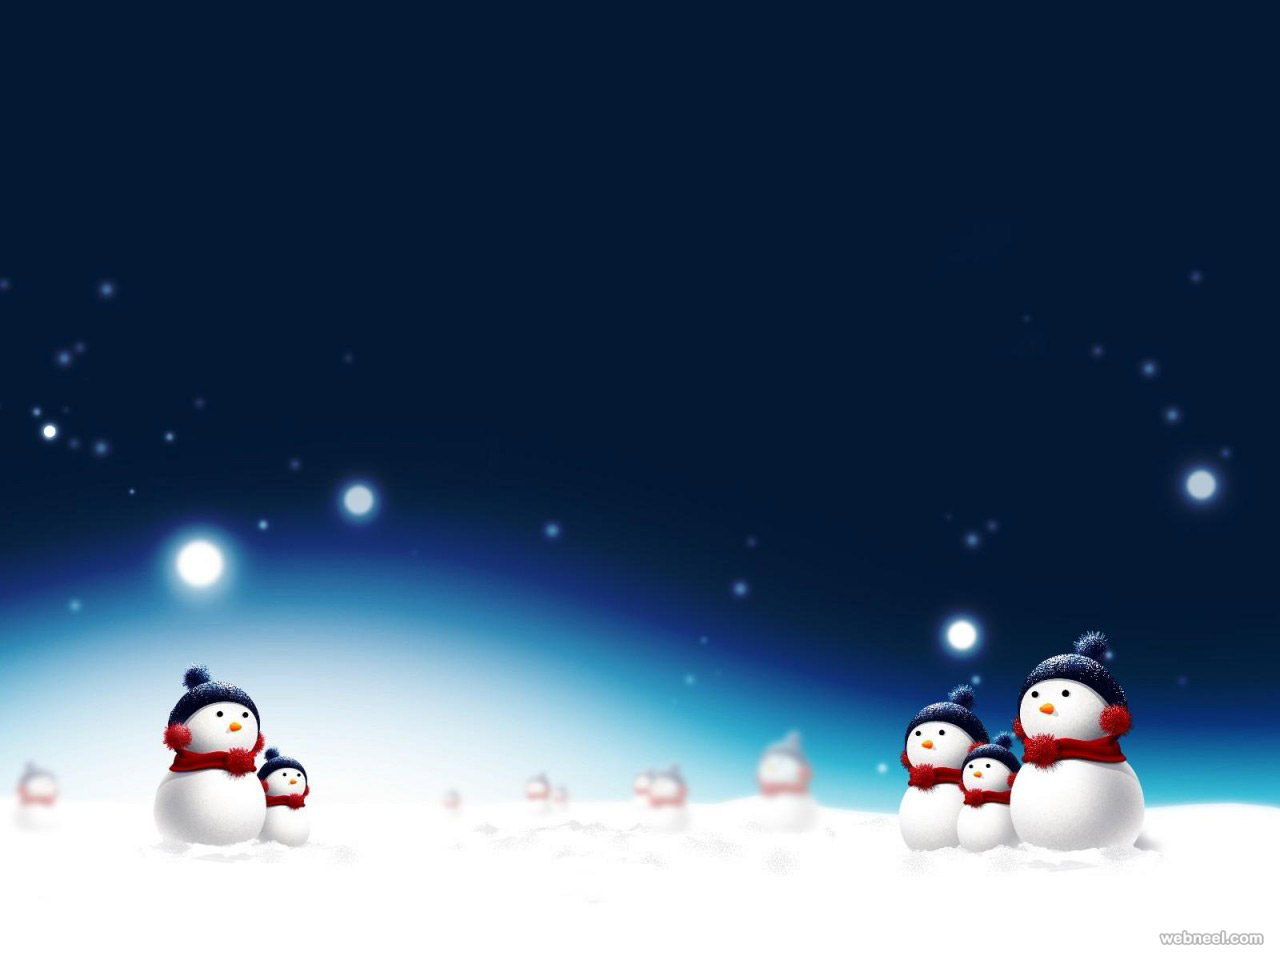 snowman christmas wallpaper